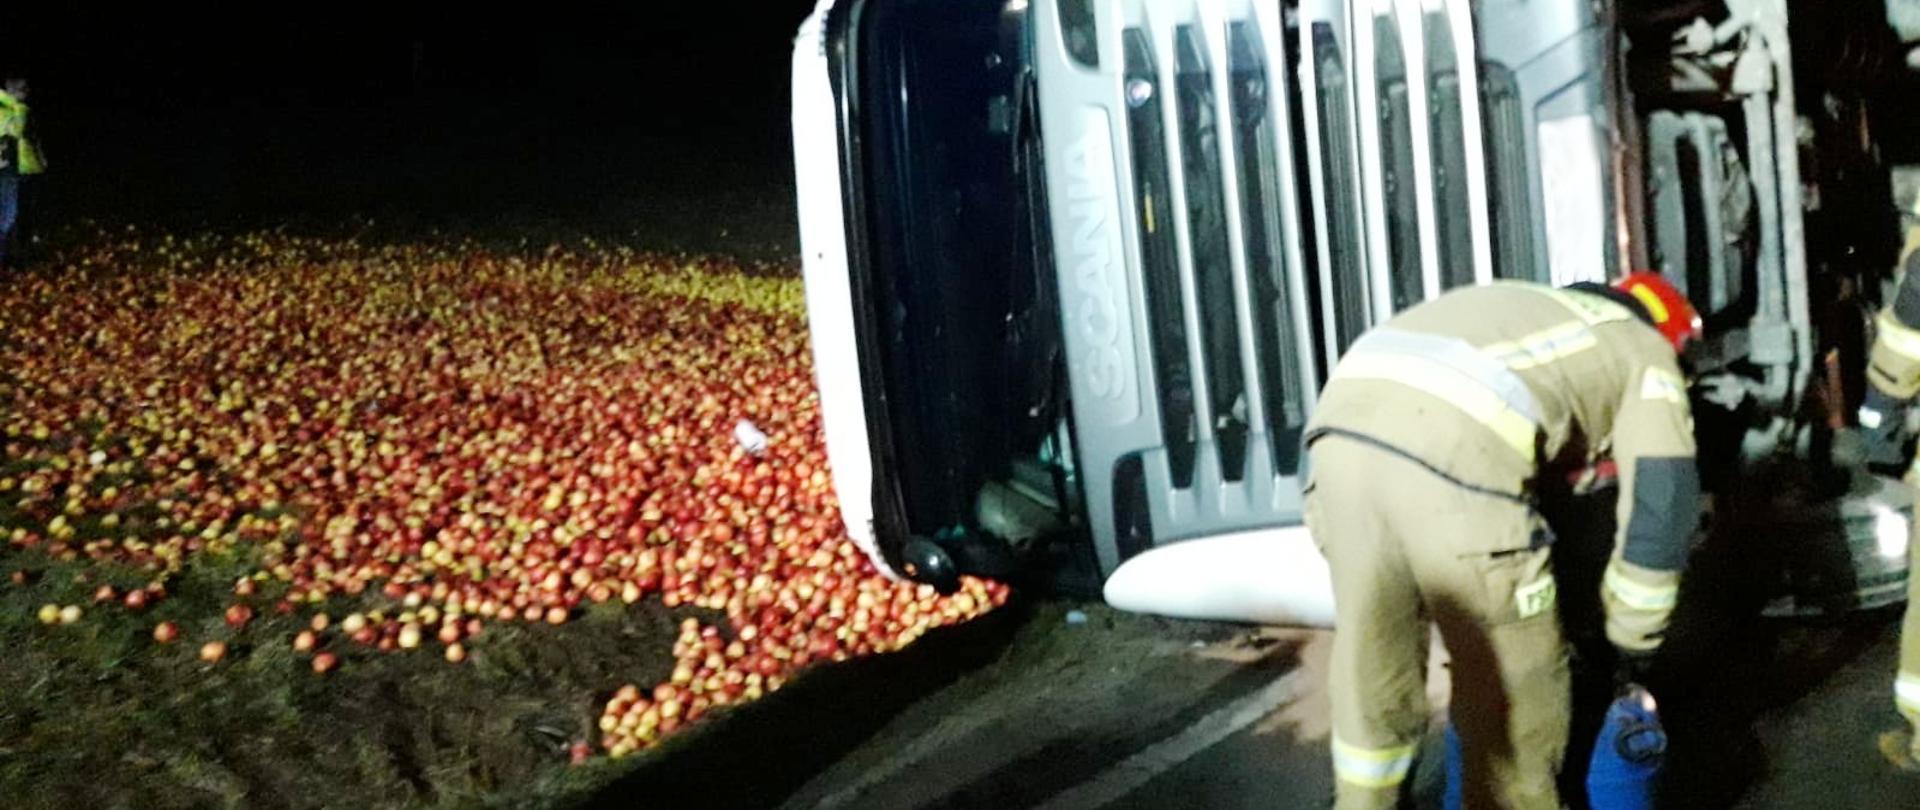 Samochód ciężarowy leżący na boku a na łące rozsypane jabłka. Obok samochodu strażak.